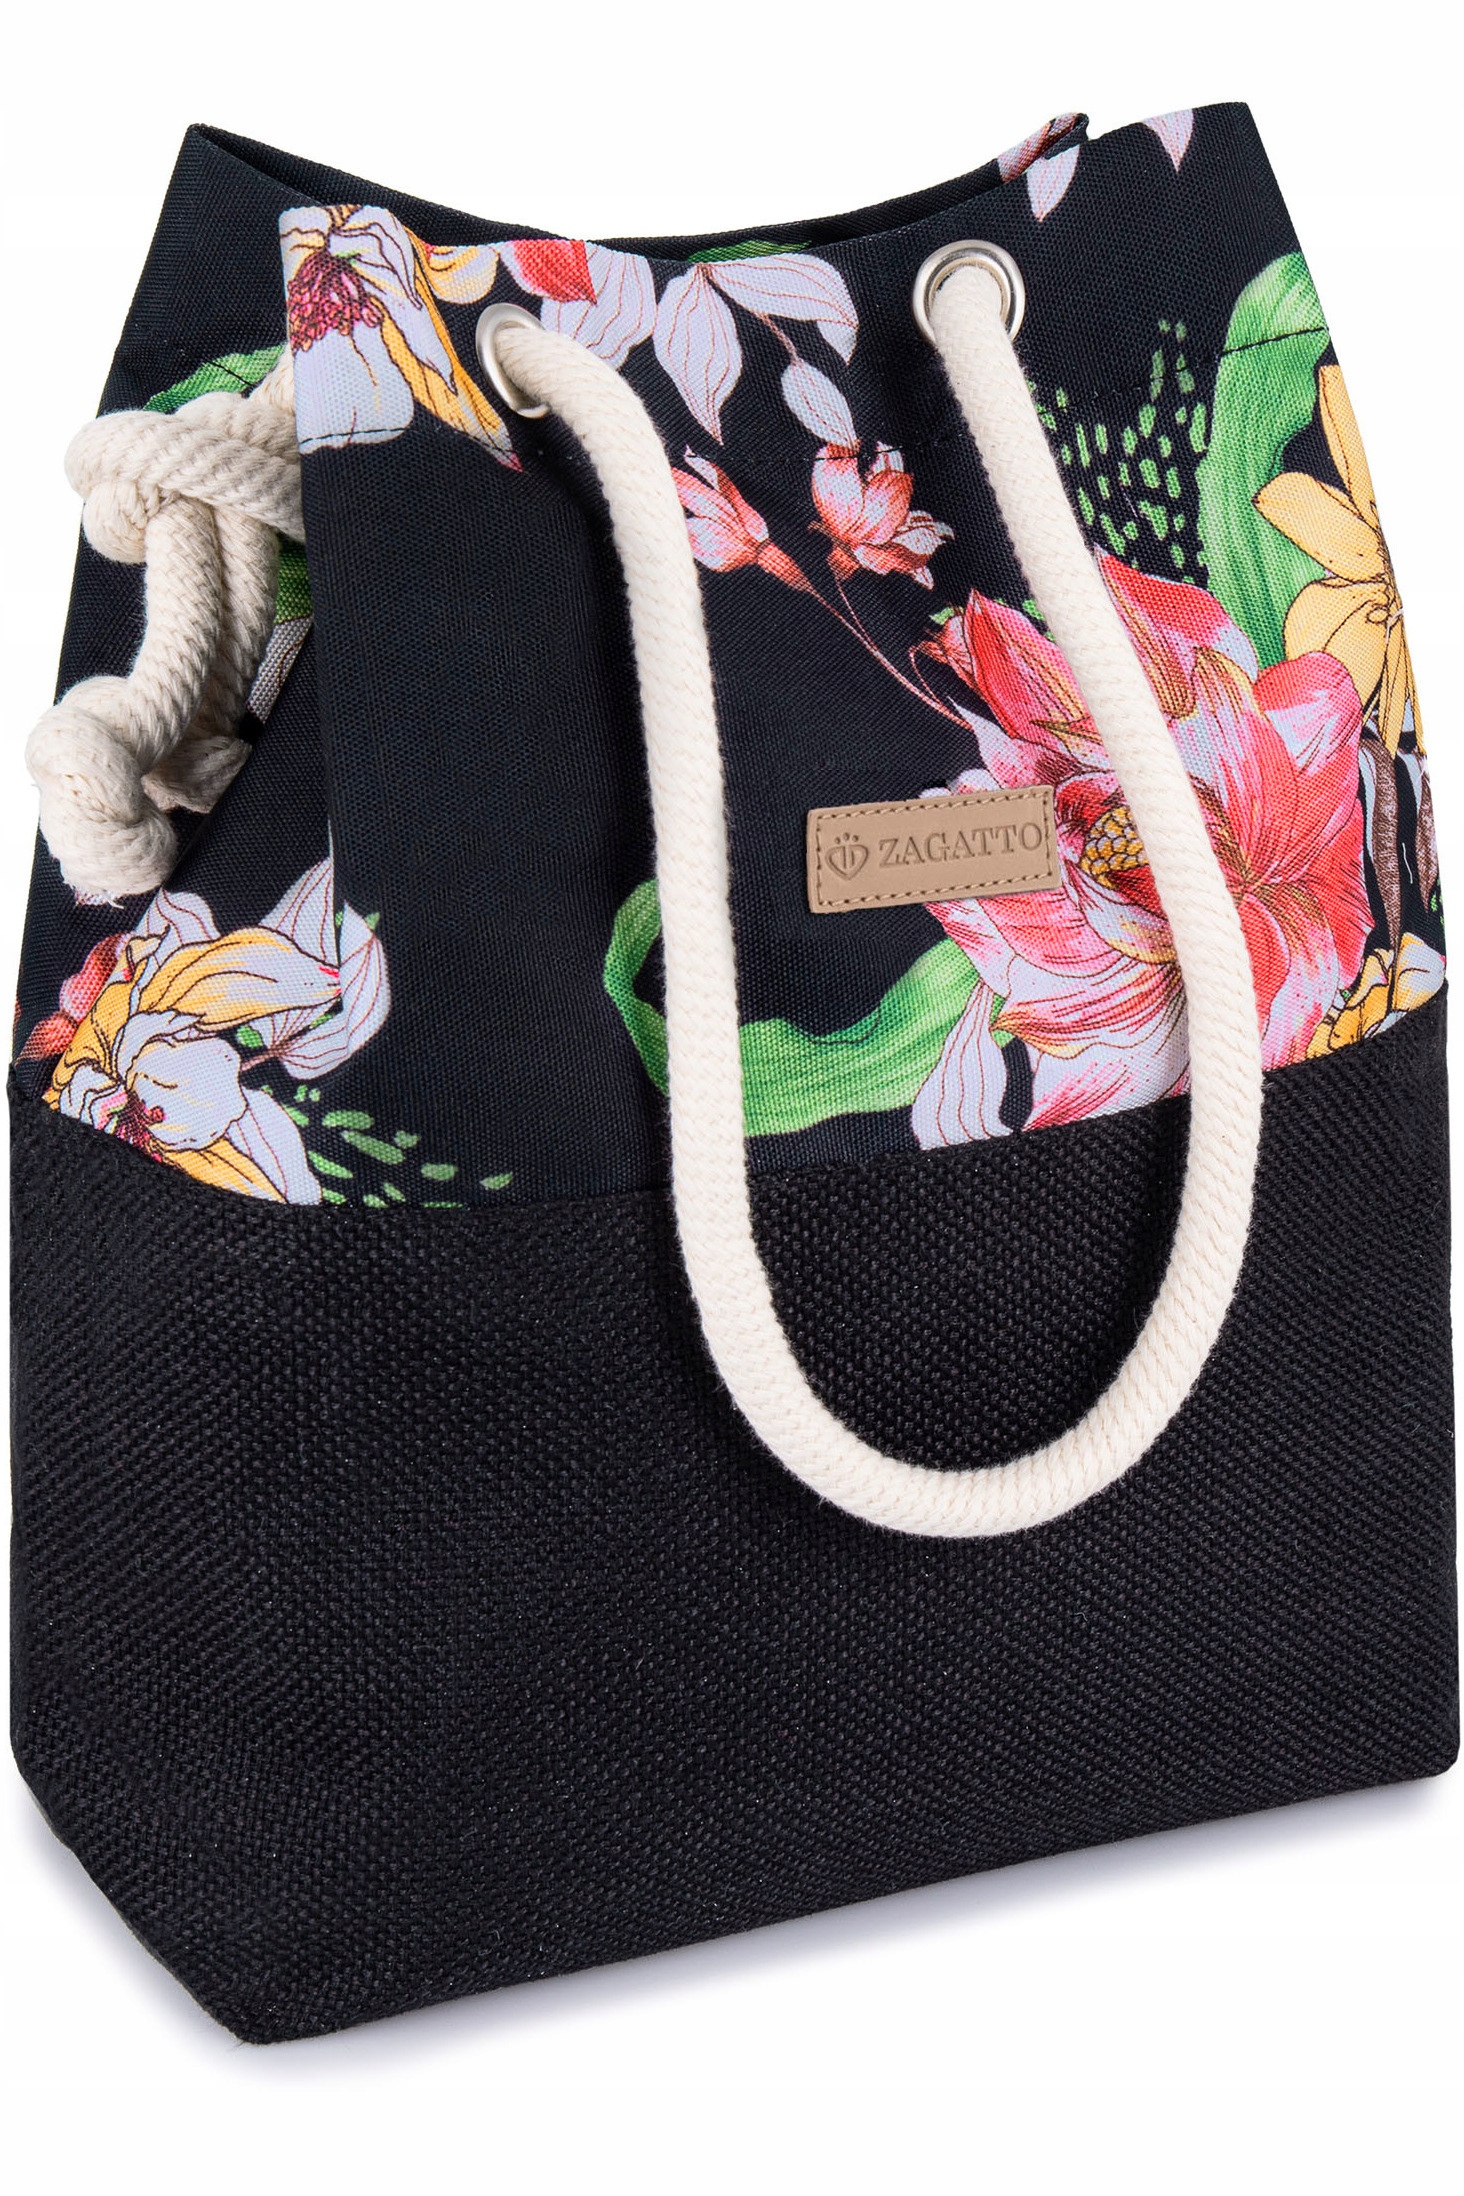 Dámska kabelka shopper čierna taška cez rameno priestranná s kvetmi ZAGATTO